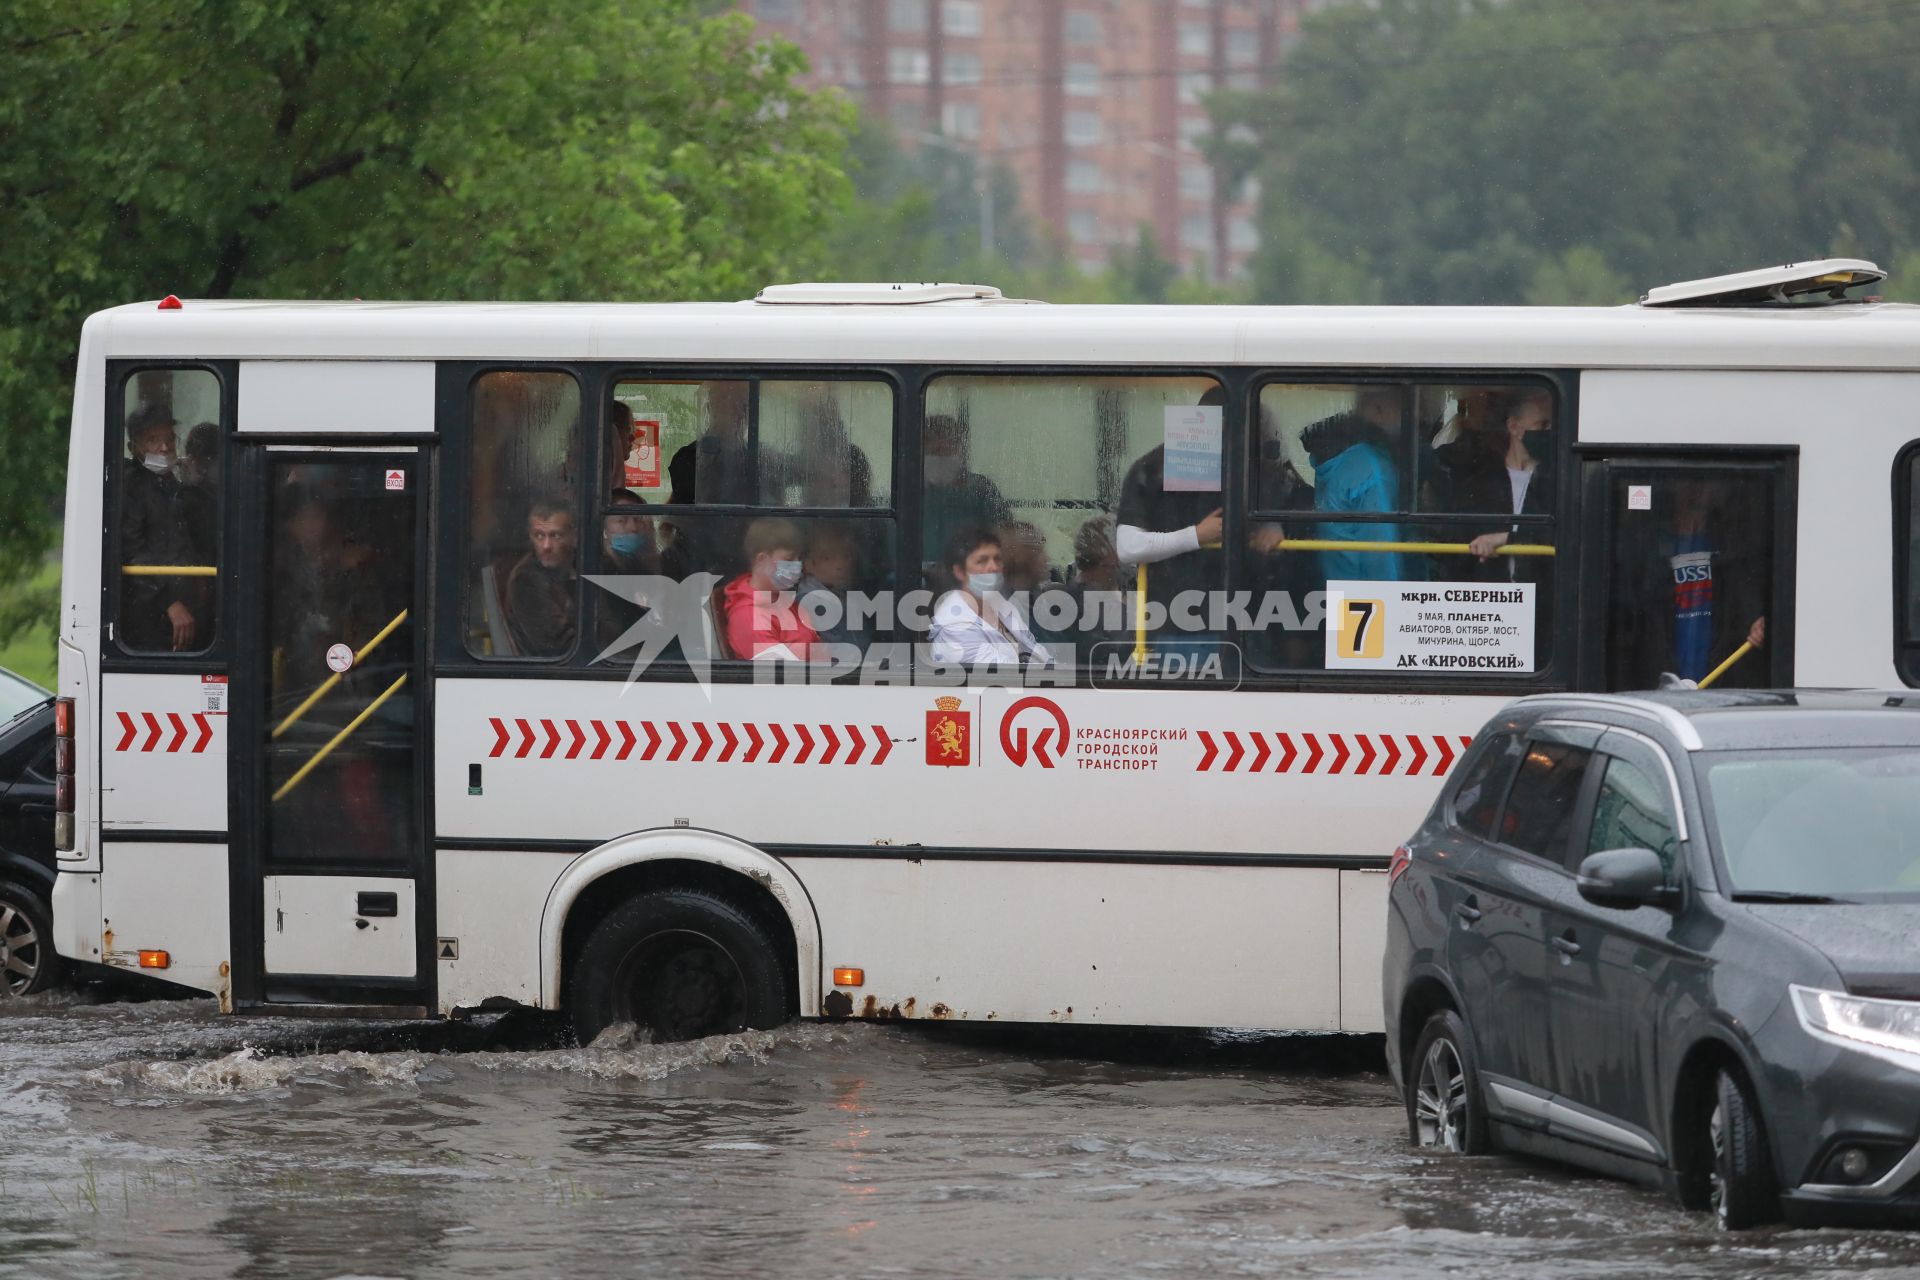 Красноярск. Машины едут по лужам во время дождя.